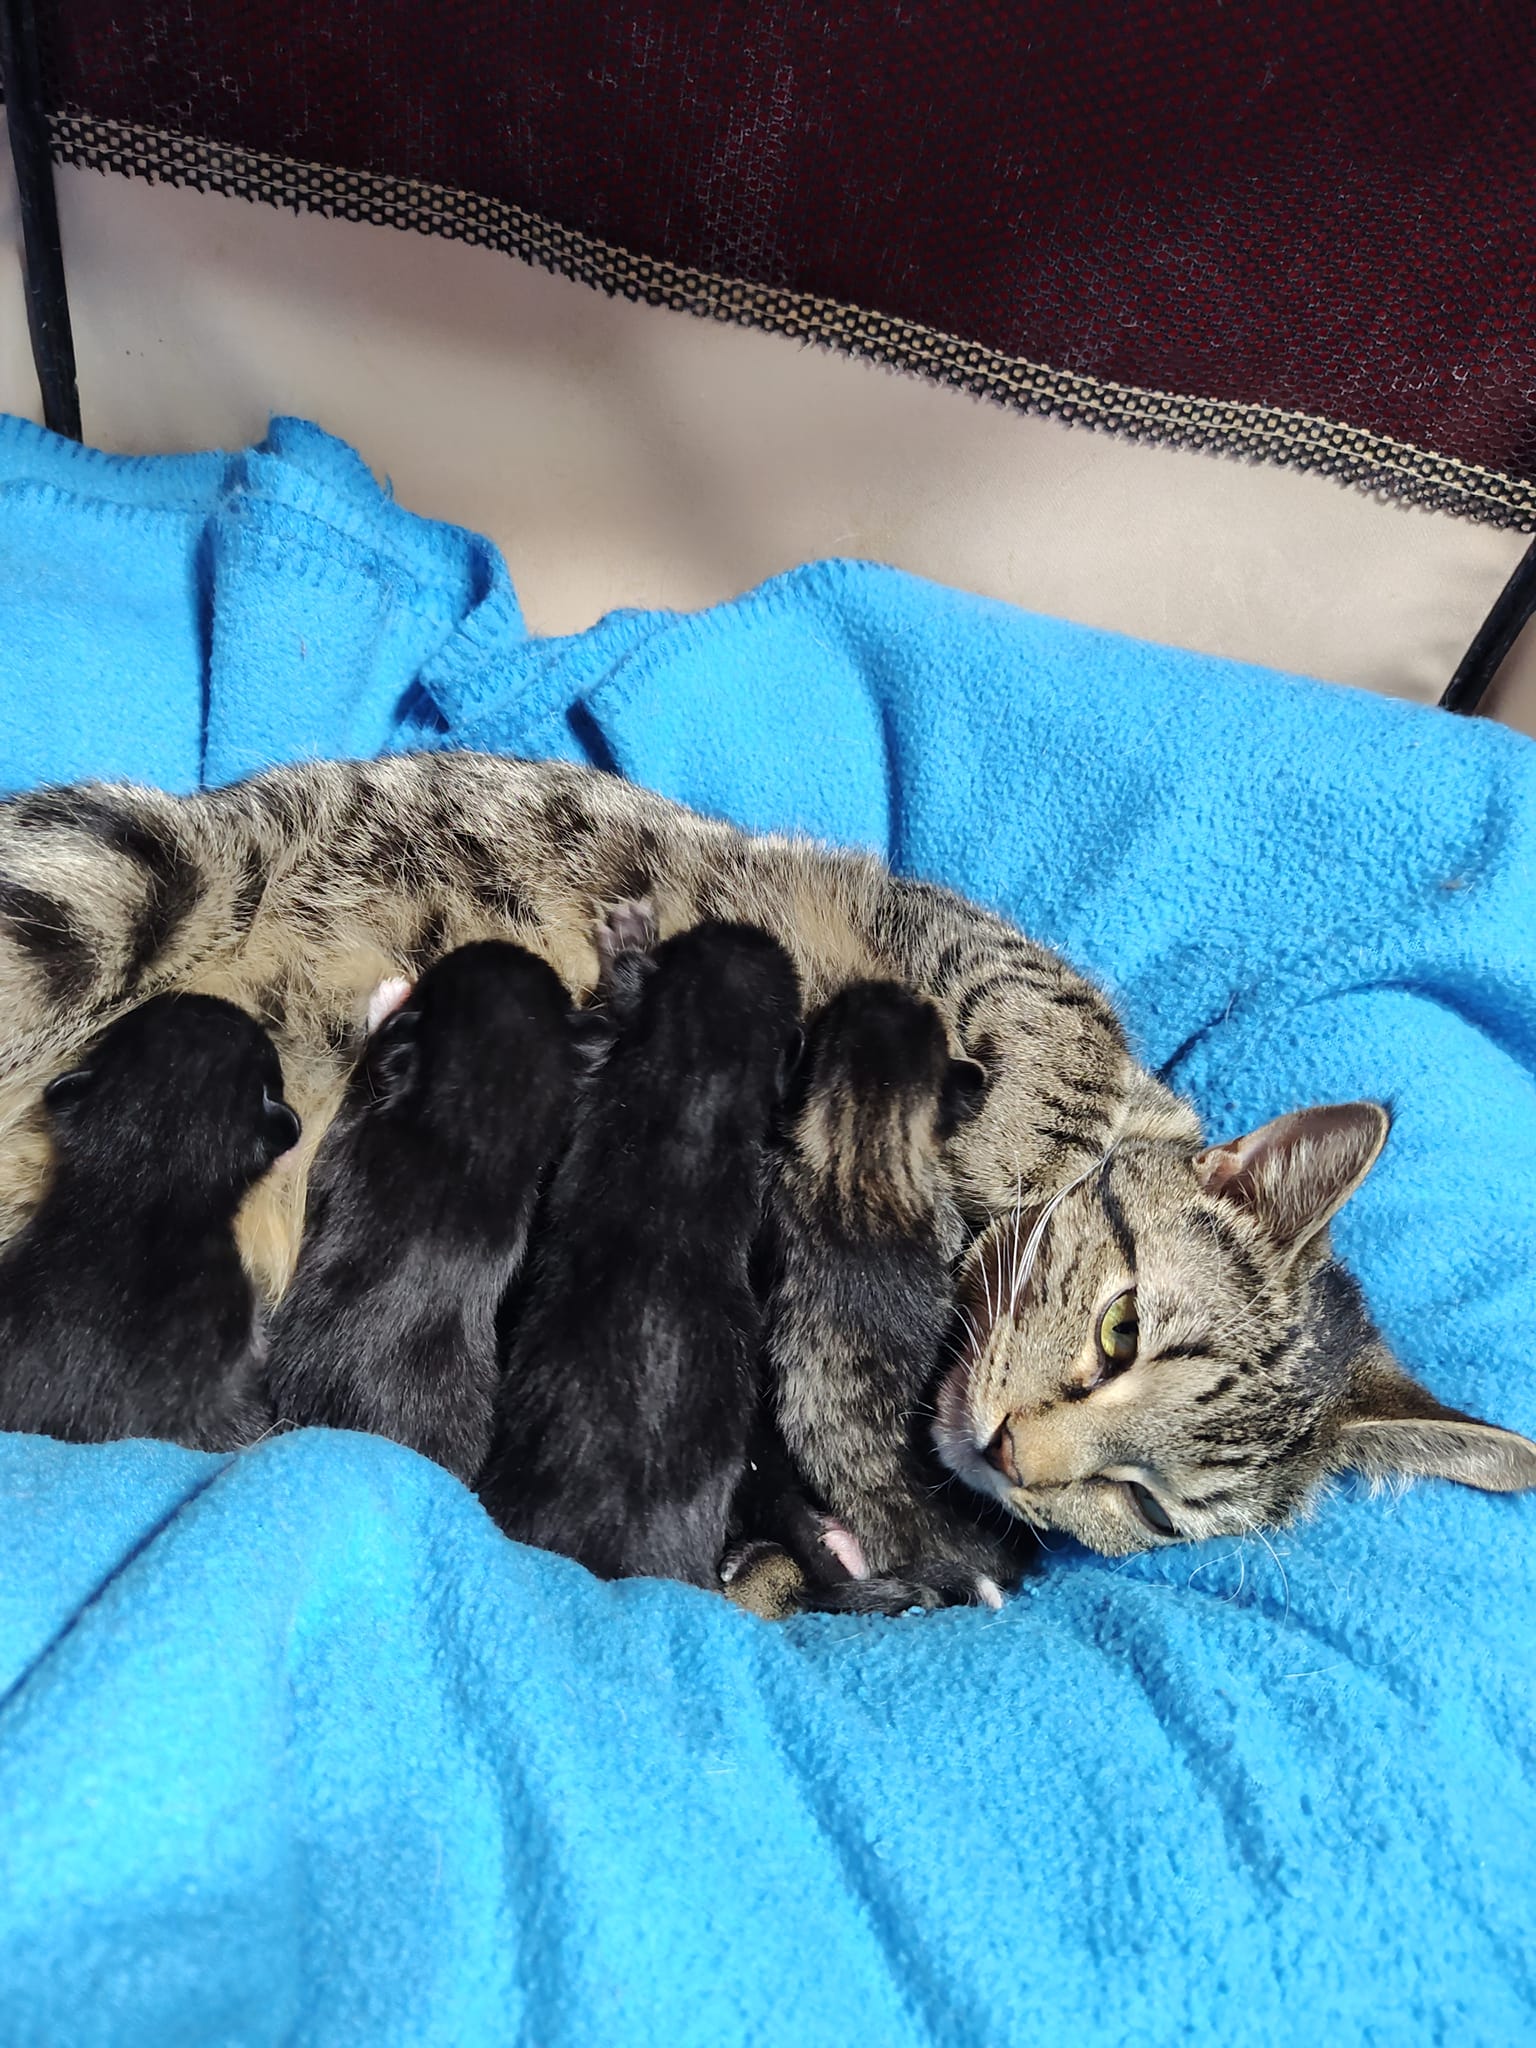 mom cat and her kittens nursing